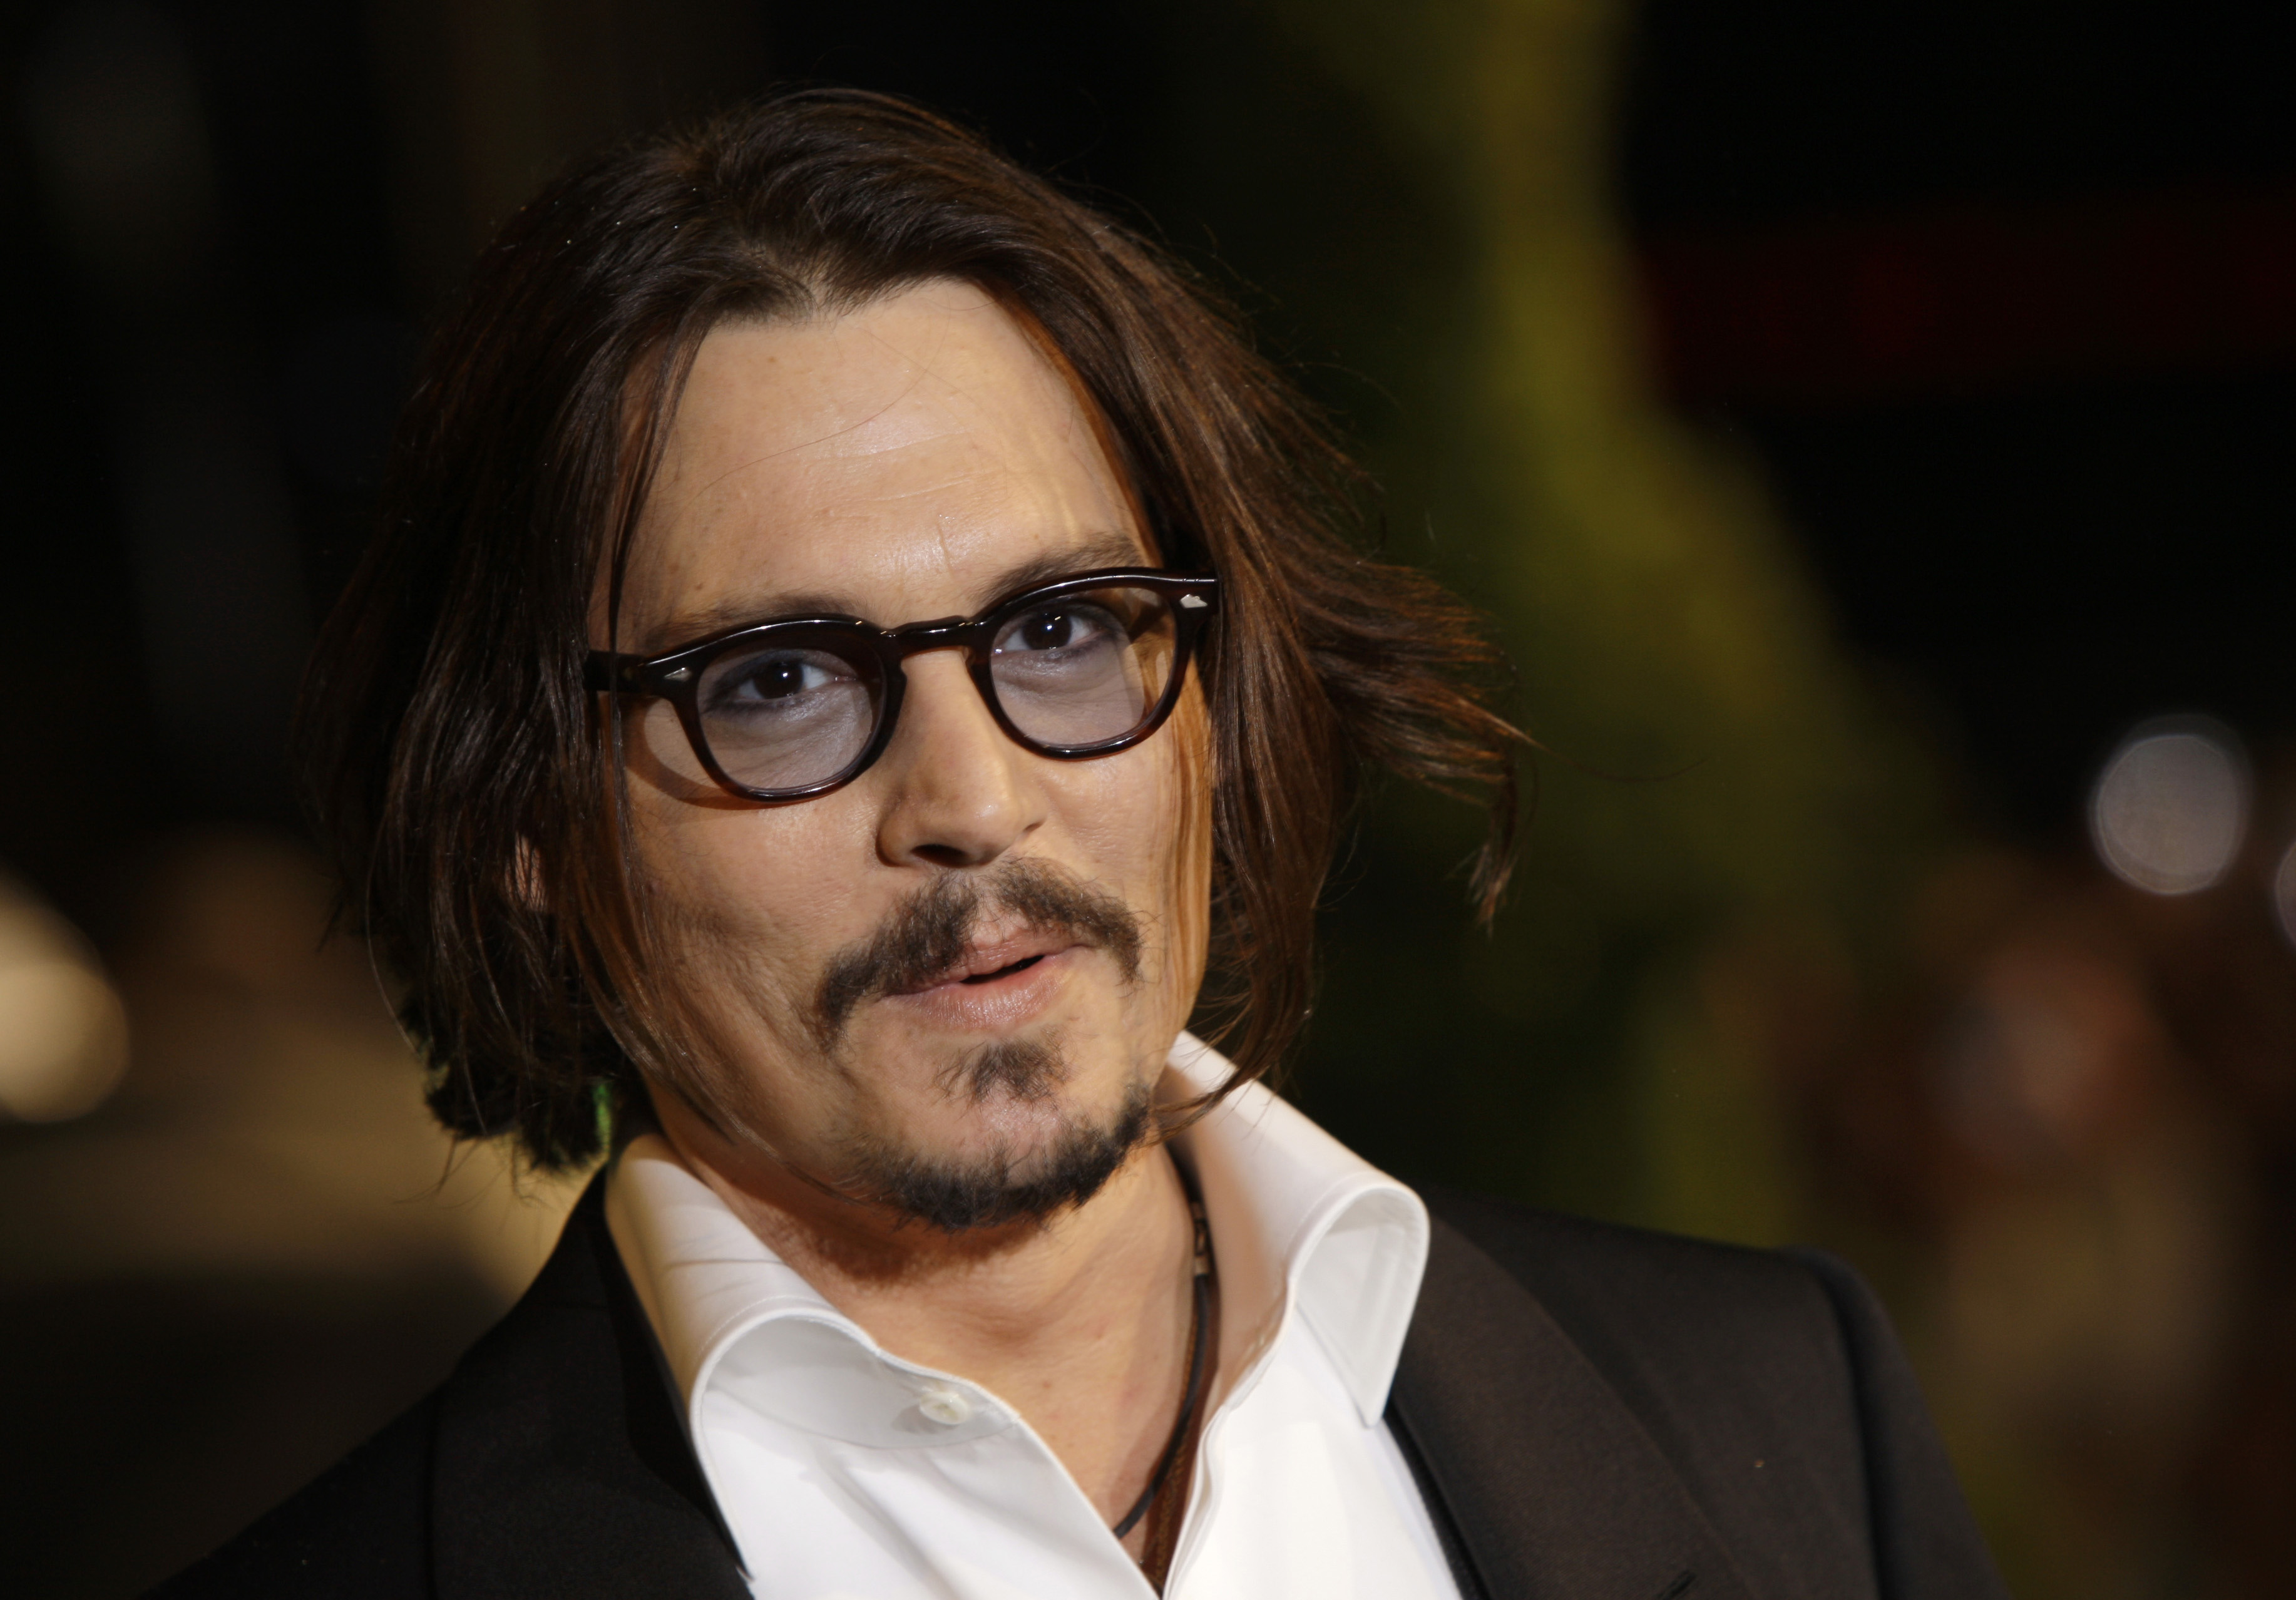 Hunkskådisen Johnny Depp hade en inkomst på 75 miljoner dollar förra året.